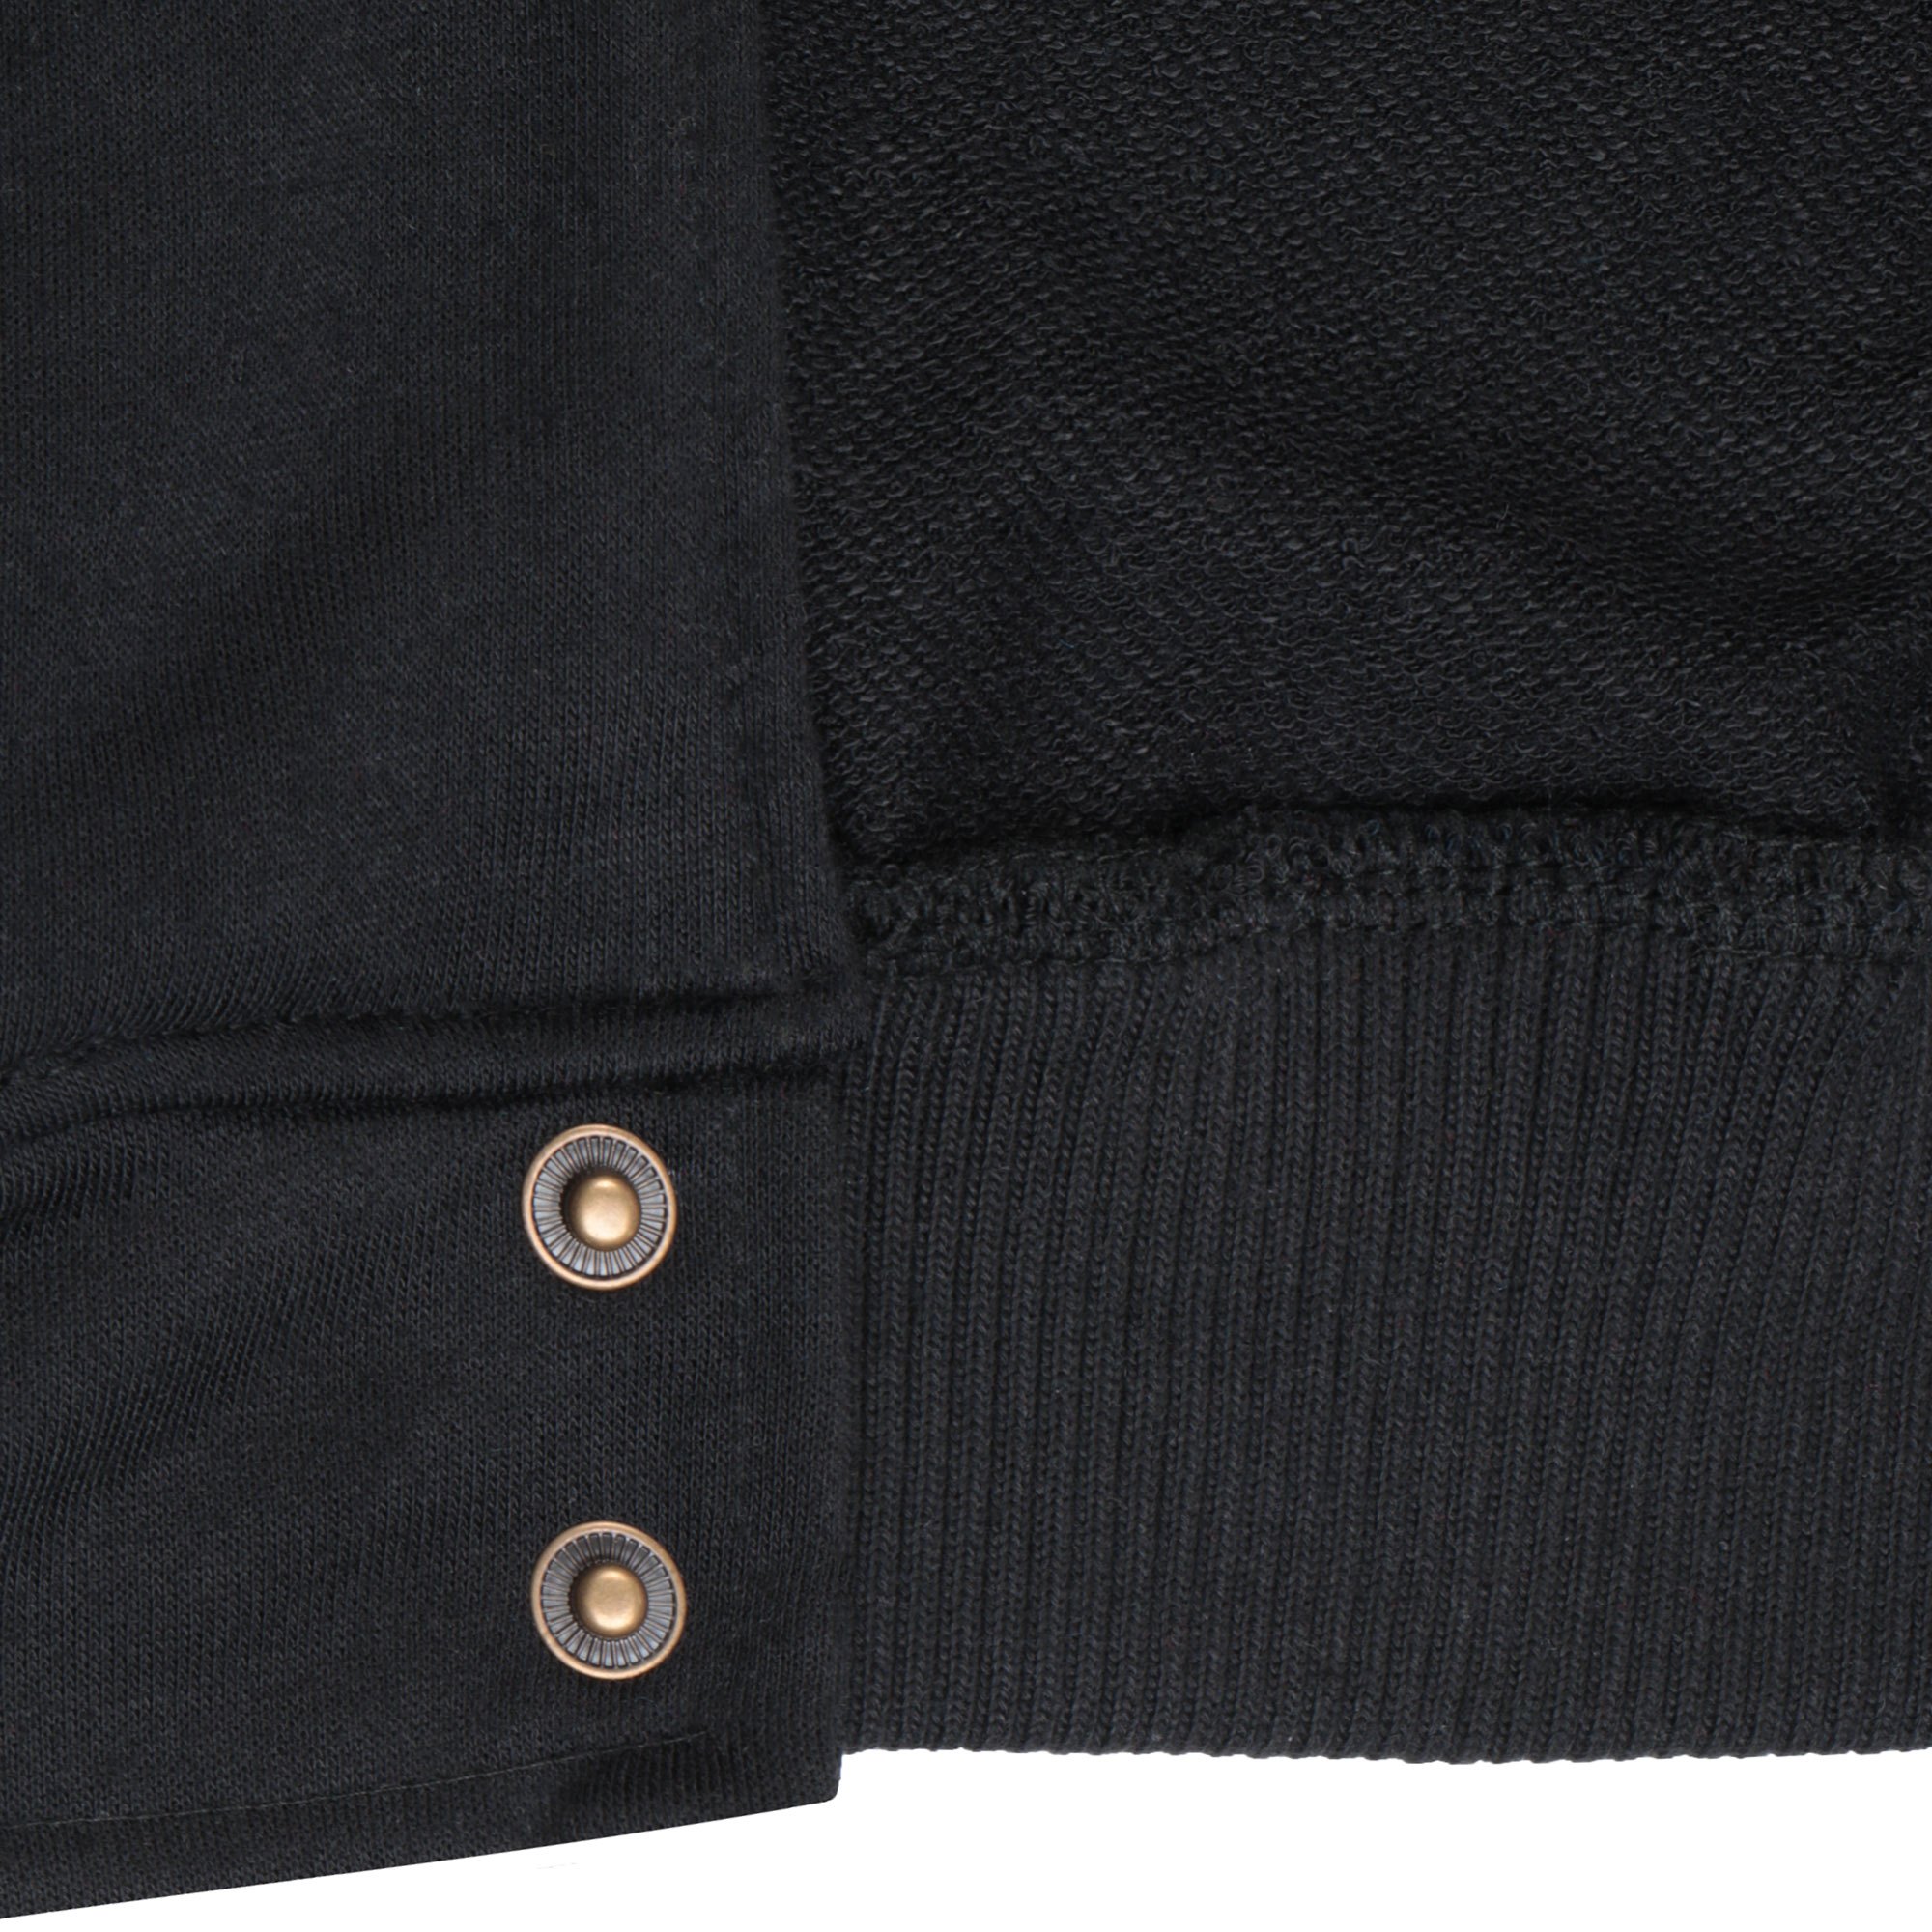 Бомбер Garment чёрный/белый XL полиэстер, цвет черный, размер XL - фото 5